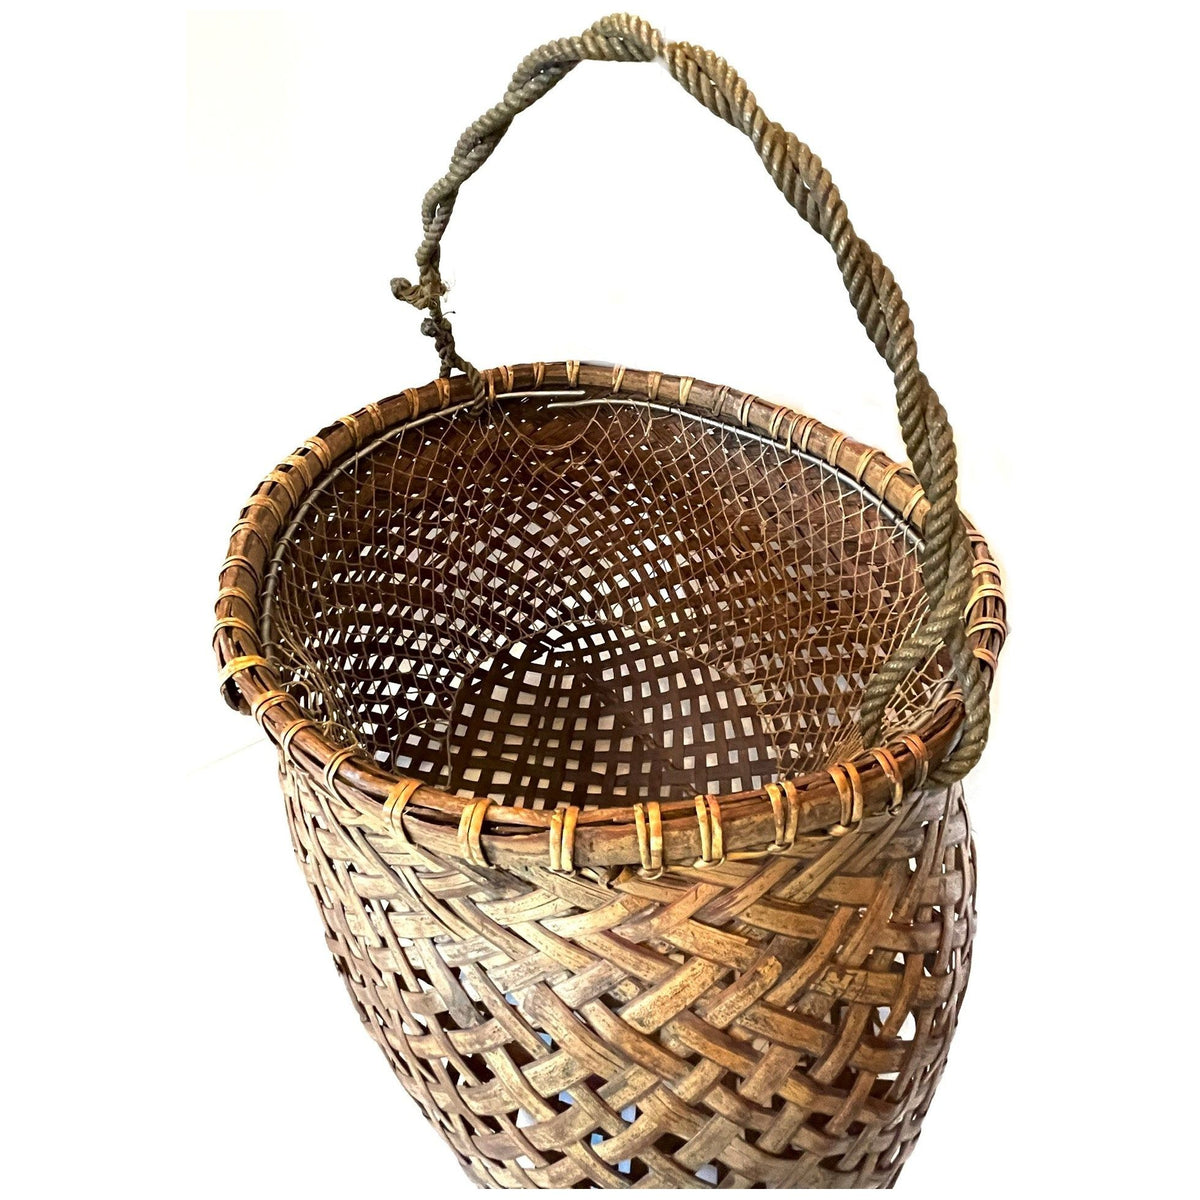 Philippine Round Fish Trap Basket – Our Taste Design